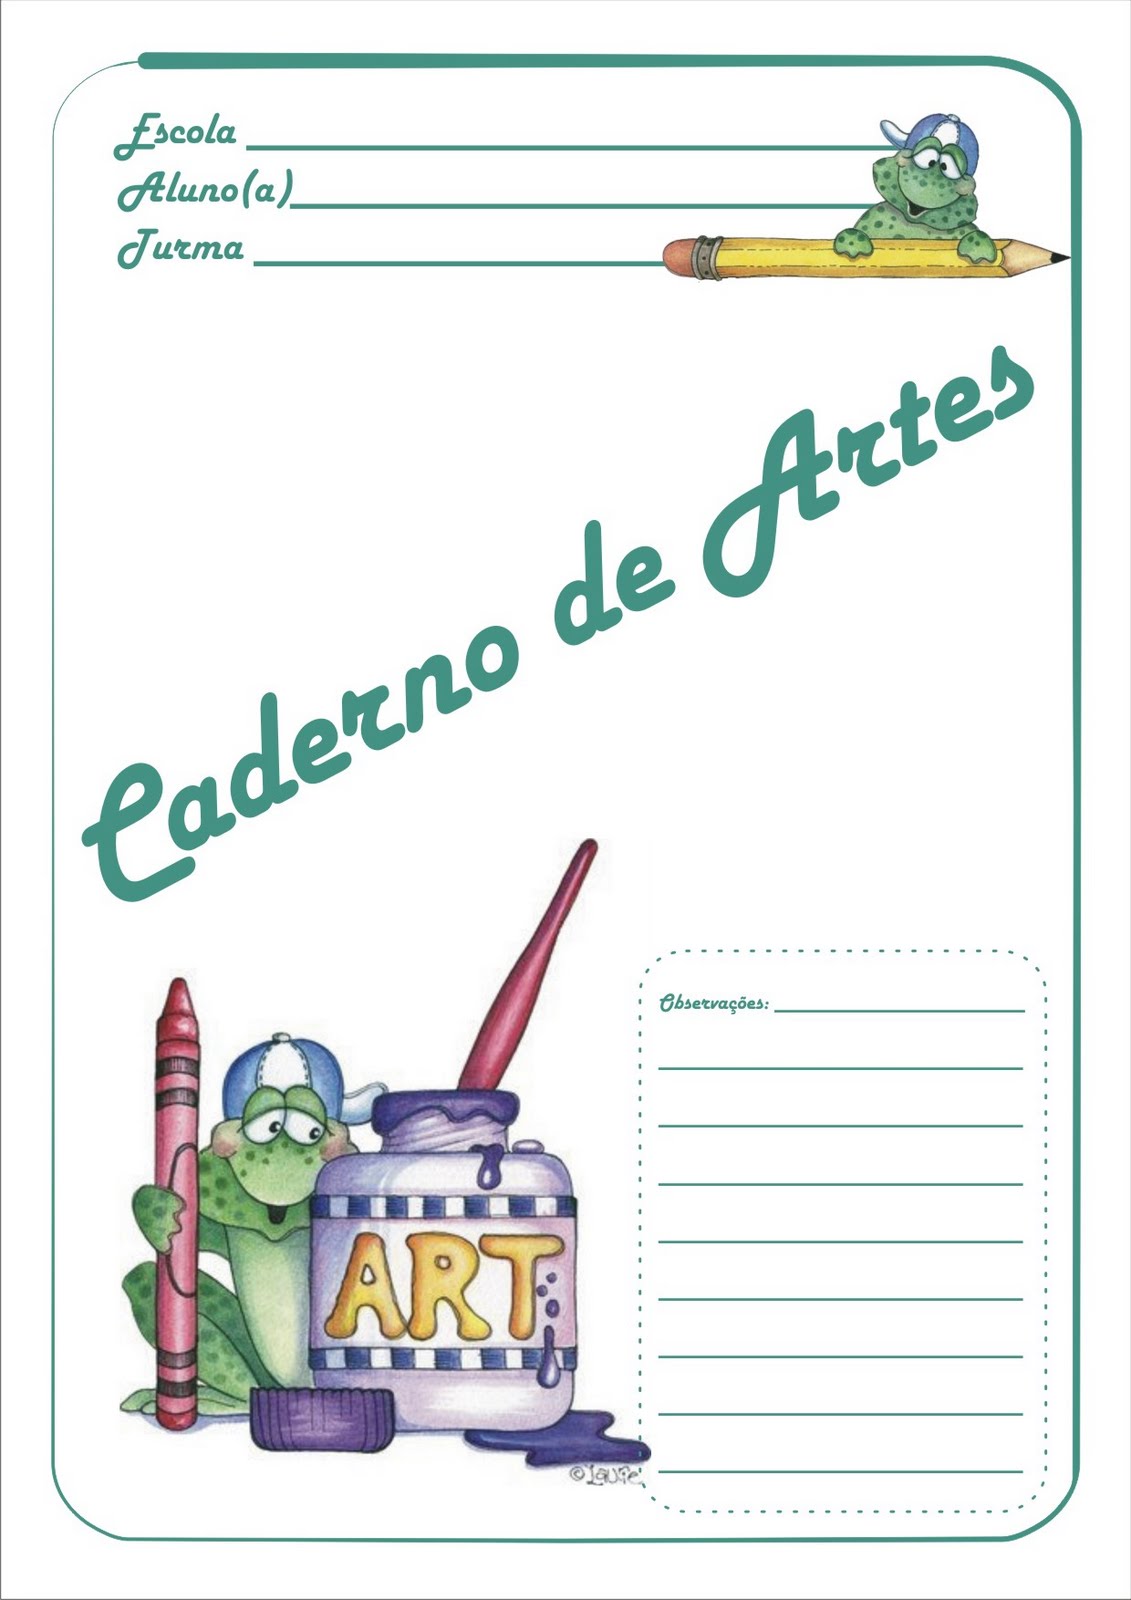 Capas para Caderno Sapinhos Educação Infantil Artes Língua Portuguesa Matemática Ciências